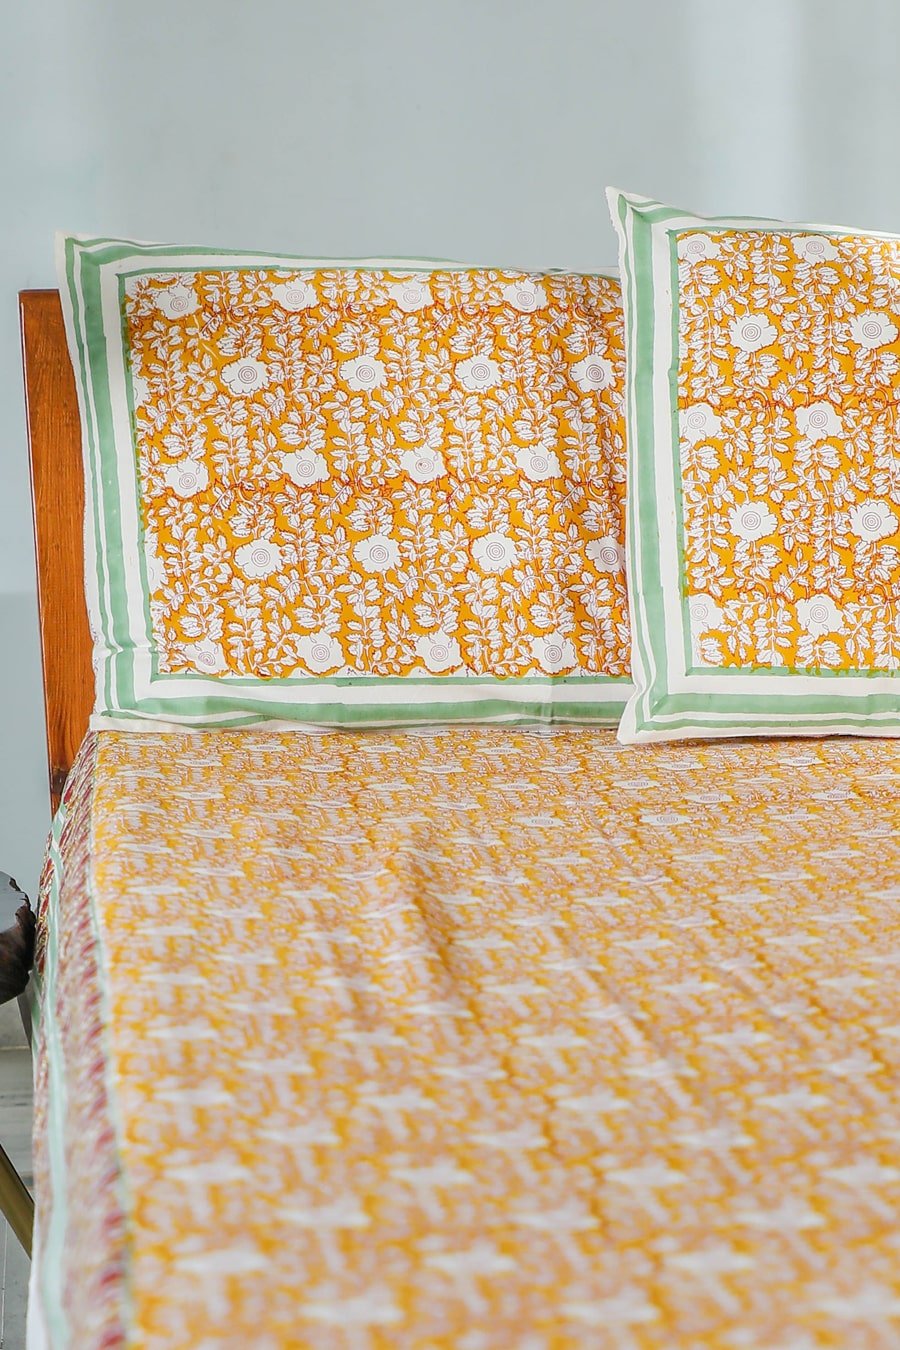 SootiSyahi 'Jungle Tales' Handblock Printed Cotton Bedsheet - SootiSyahi